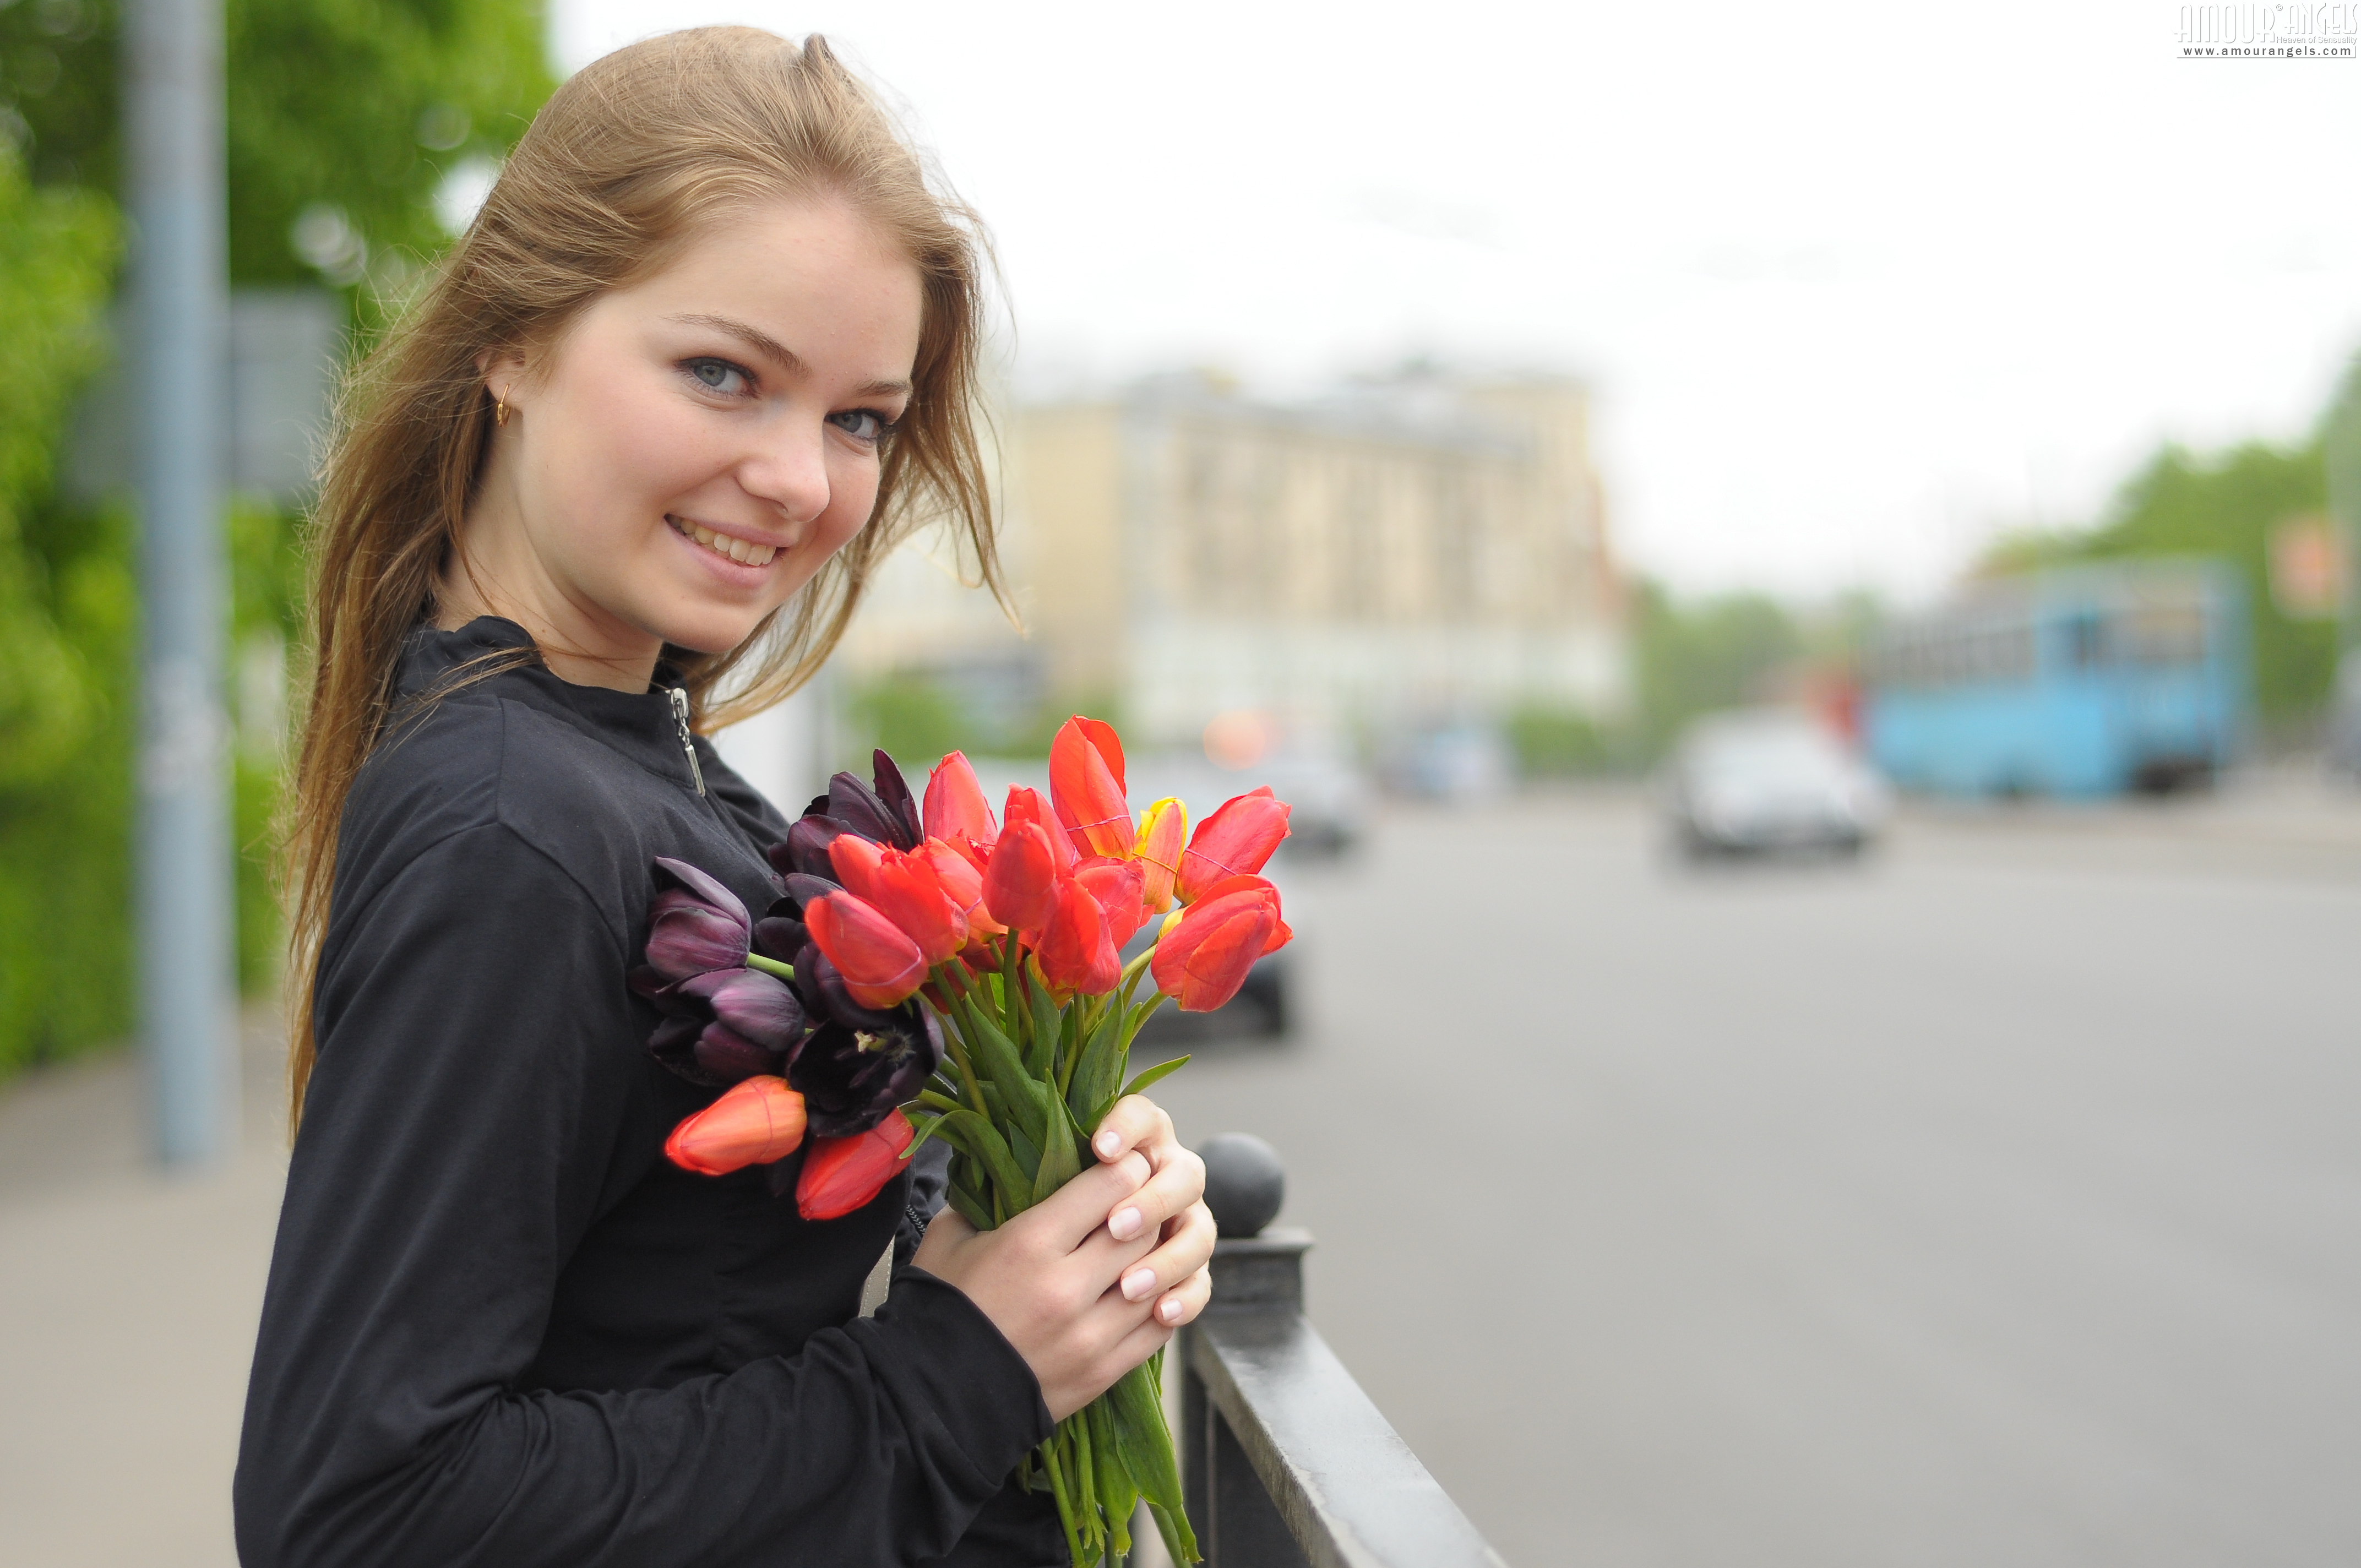 People 4288x2848 Amour Angels Bridgit A women model smiling blonde flowers women outdoors Russian Russian women